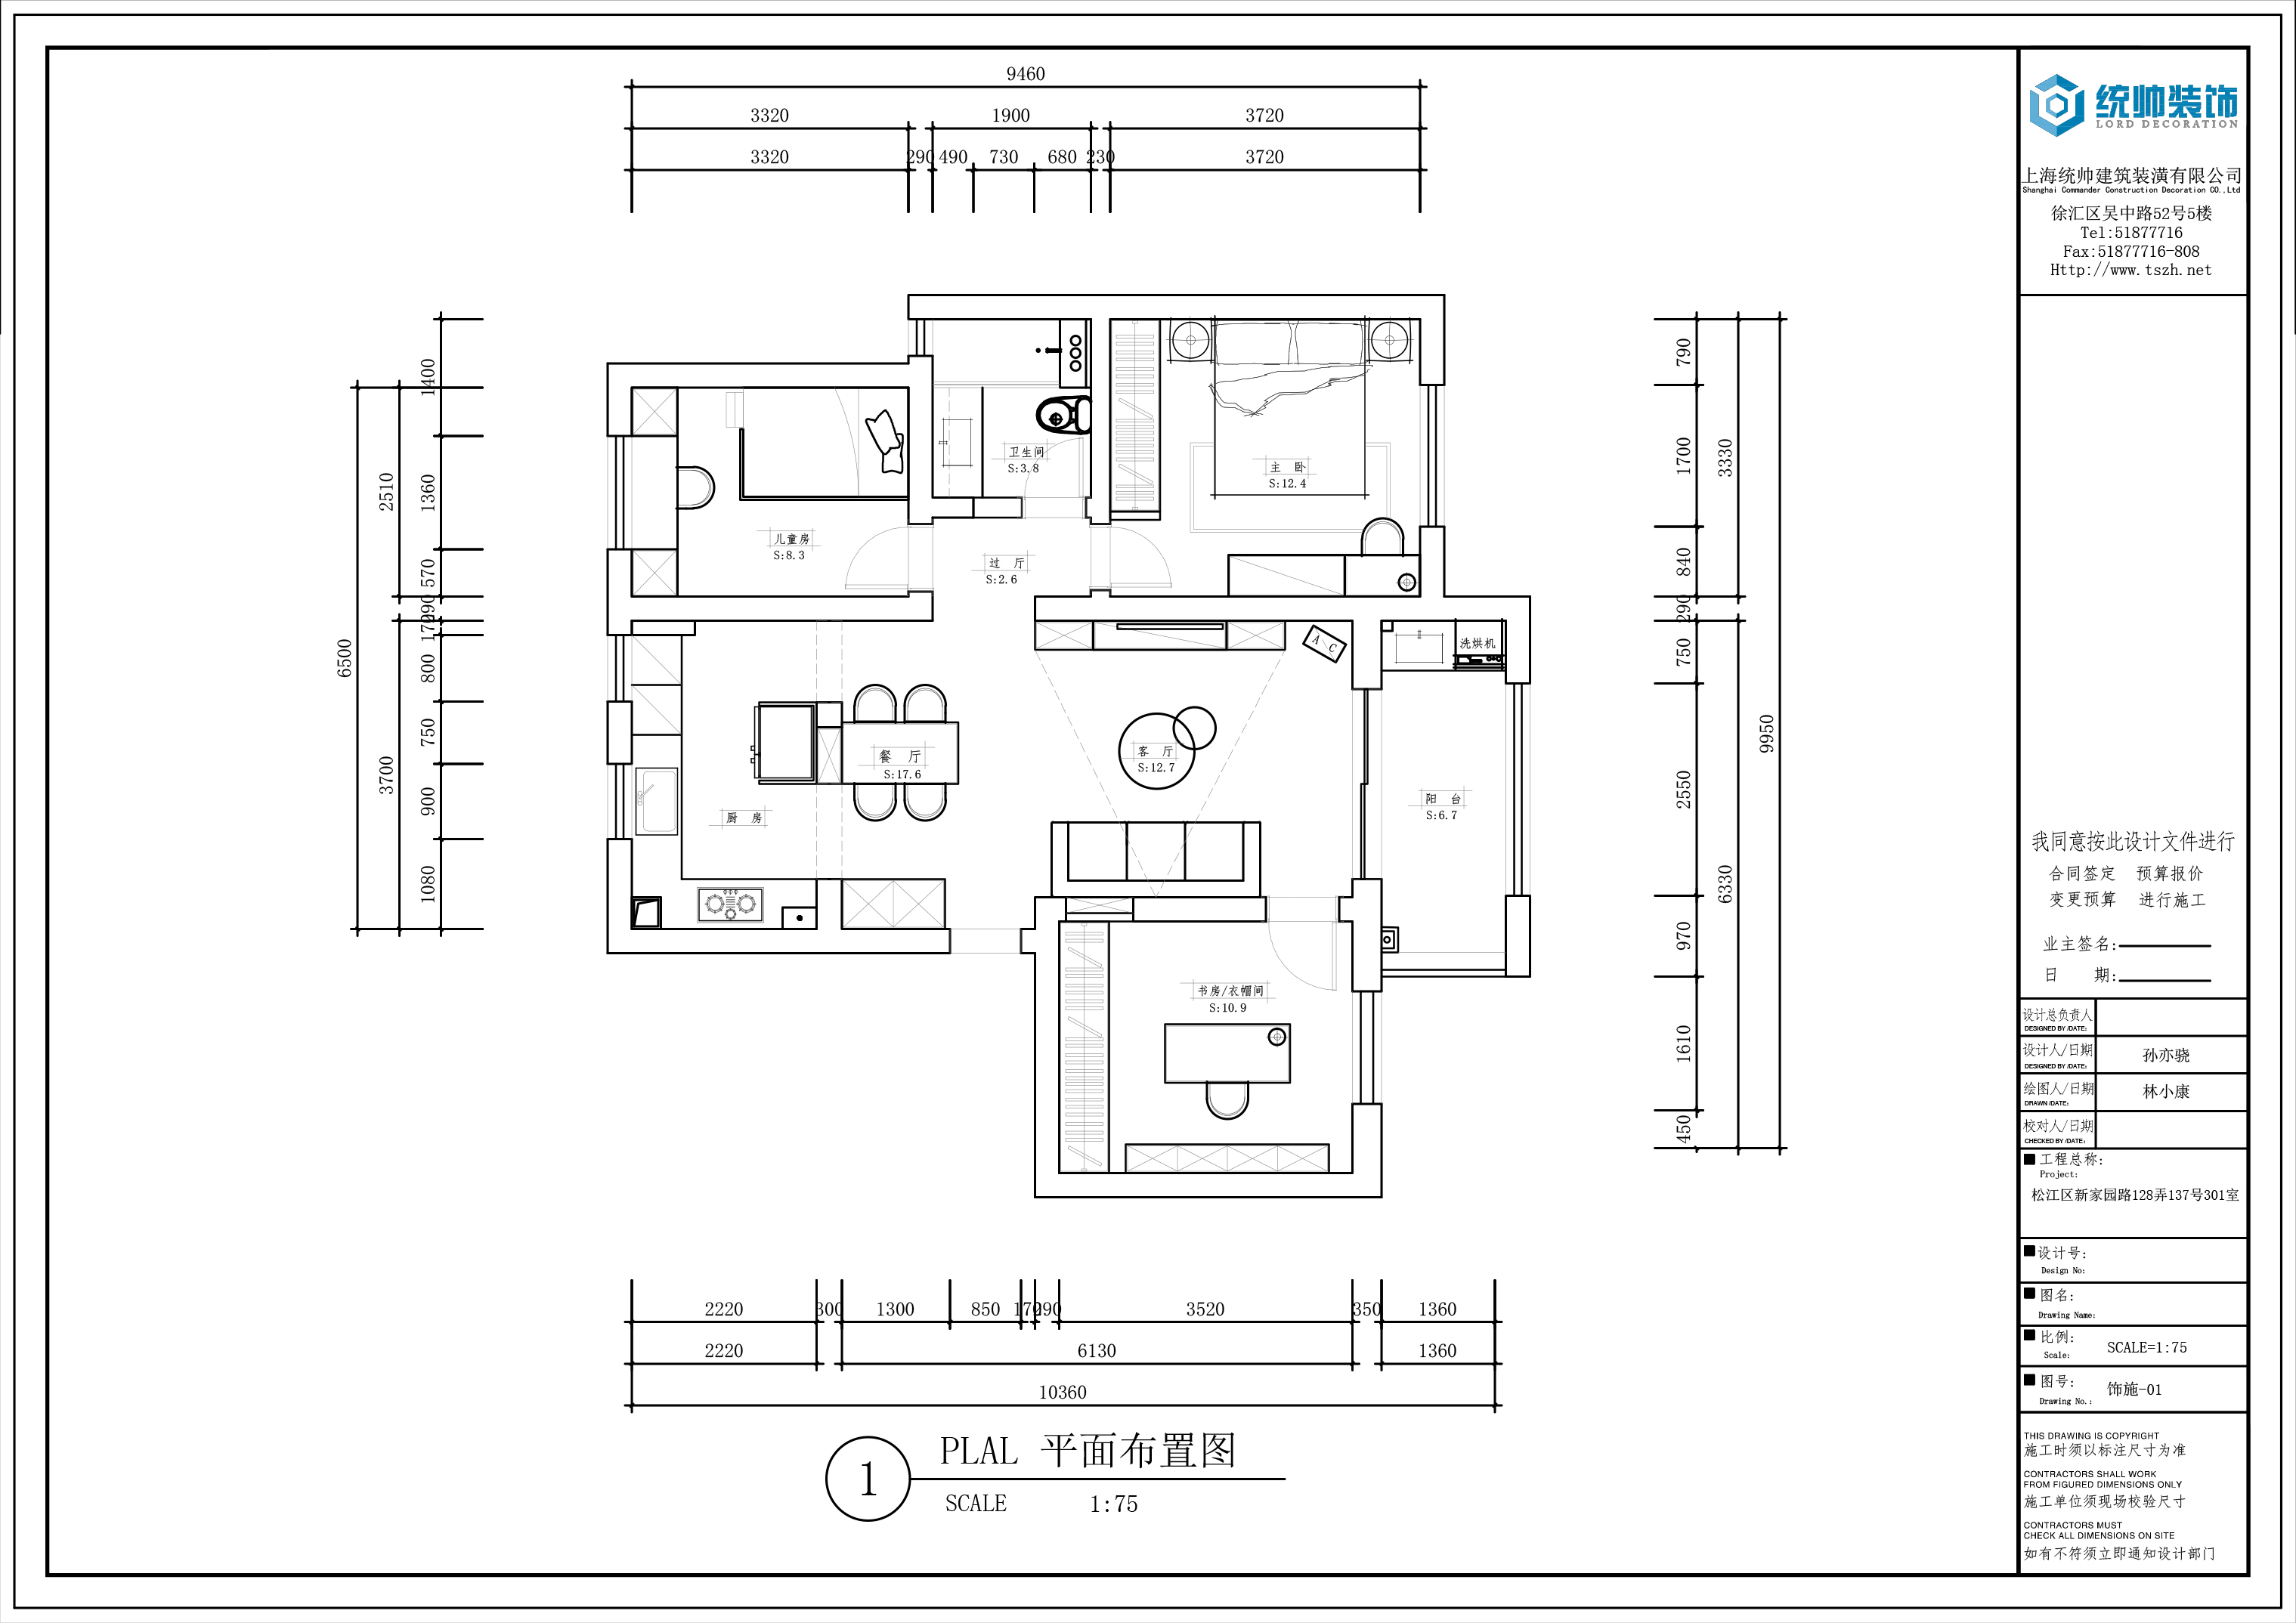 新凯家园二期137号201室户型分析图